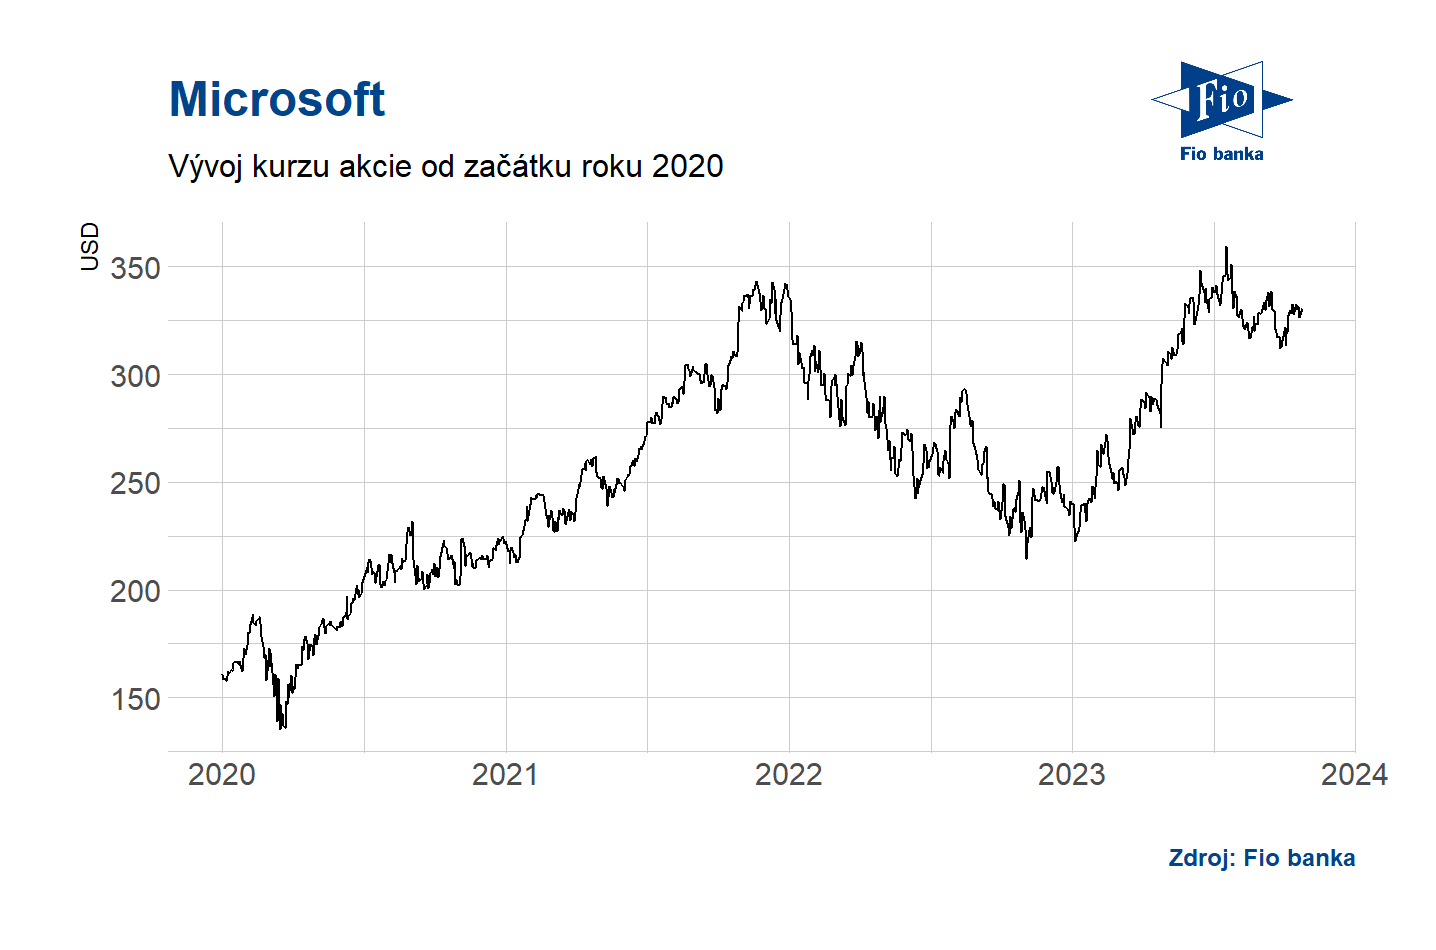 Vývoj akcií Microsoft